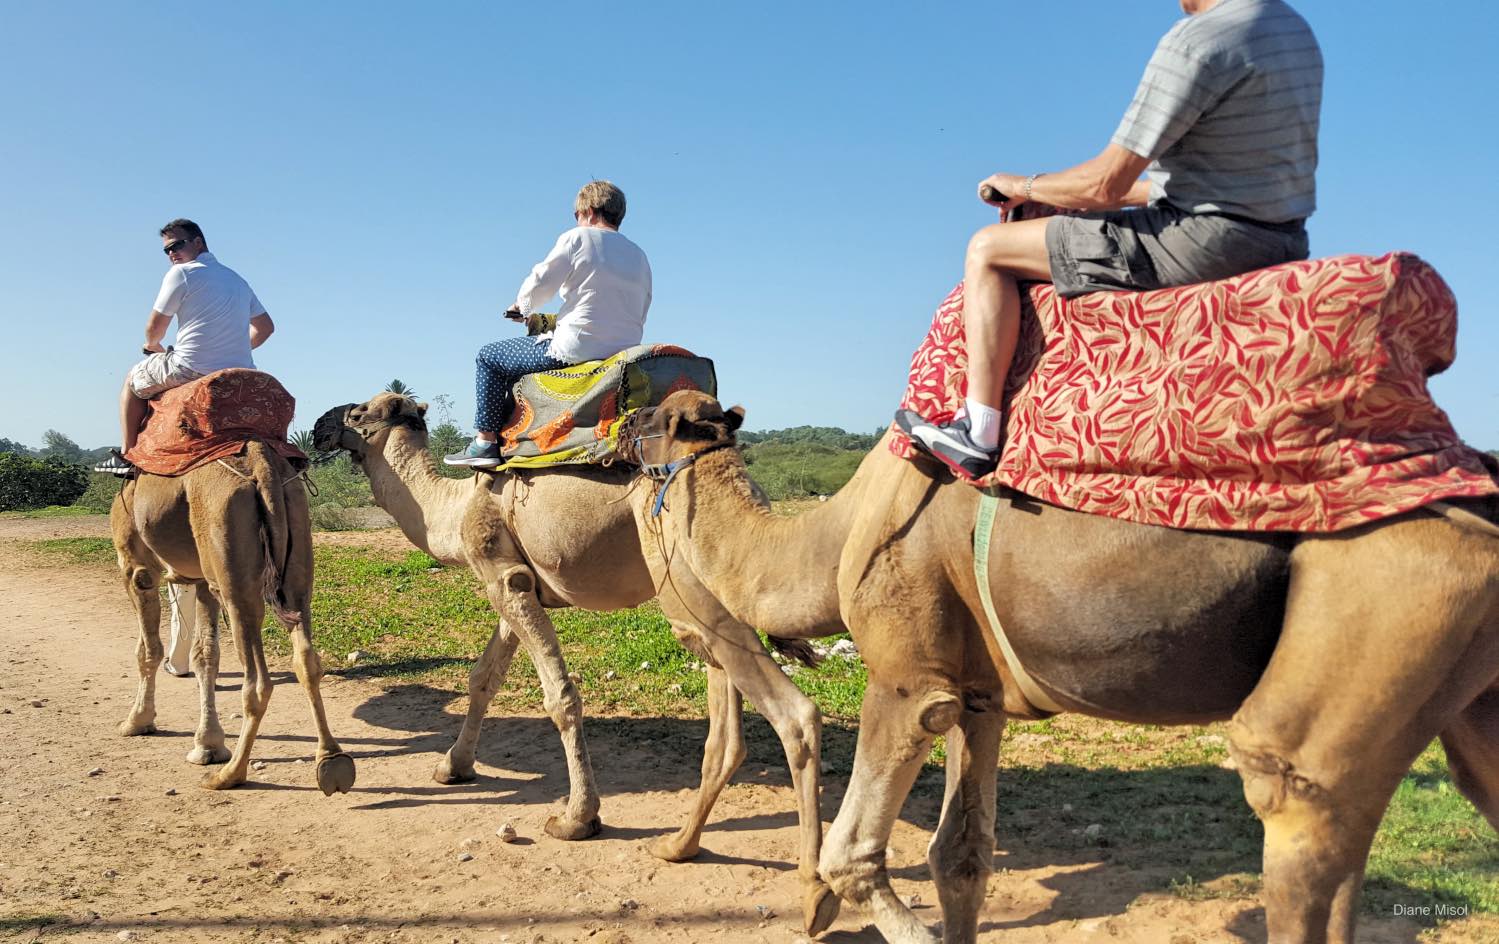 Camel riding in the countryside, Agadir, Morocco